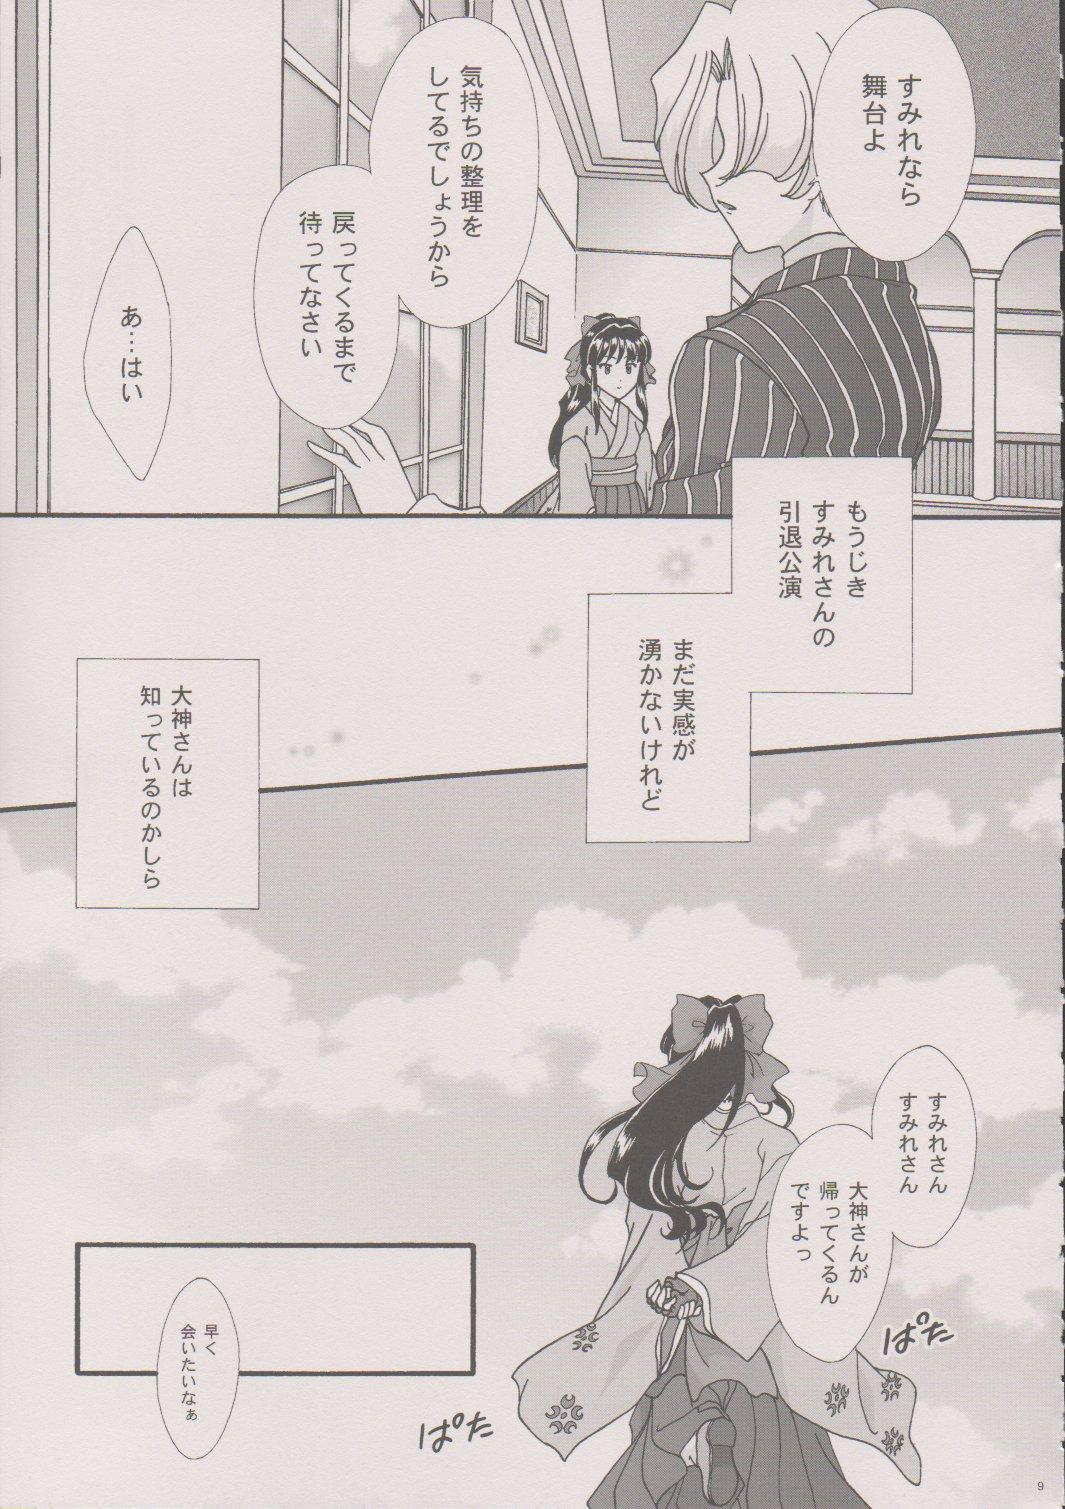 Public [TSK (Fuuga Utsura)] Maihime ~Karen~ 6 Teito Yori. (Sakura Wars) - Sakura taisen Solo Girl - Page 8